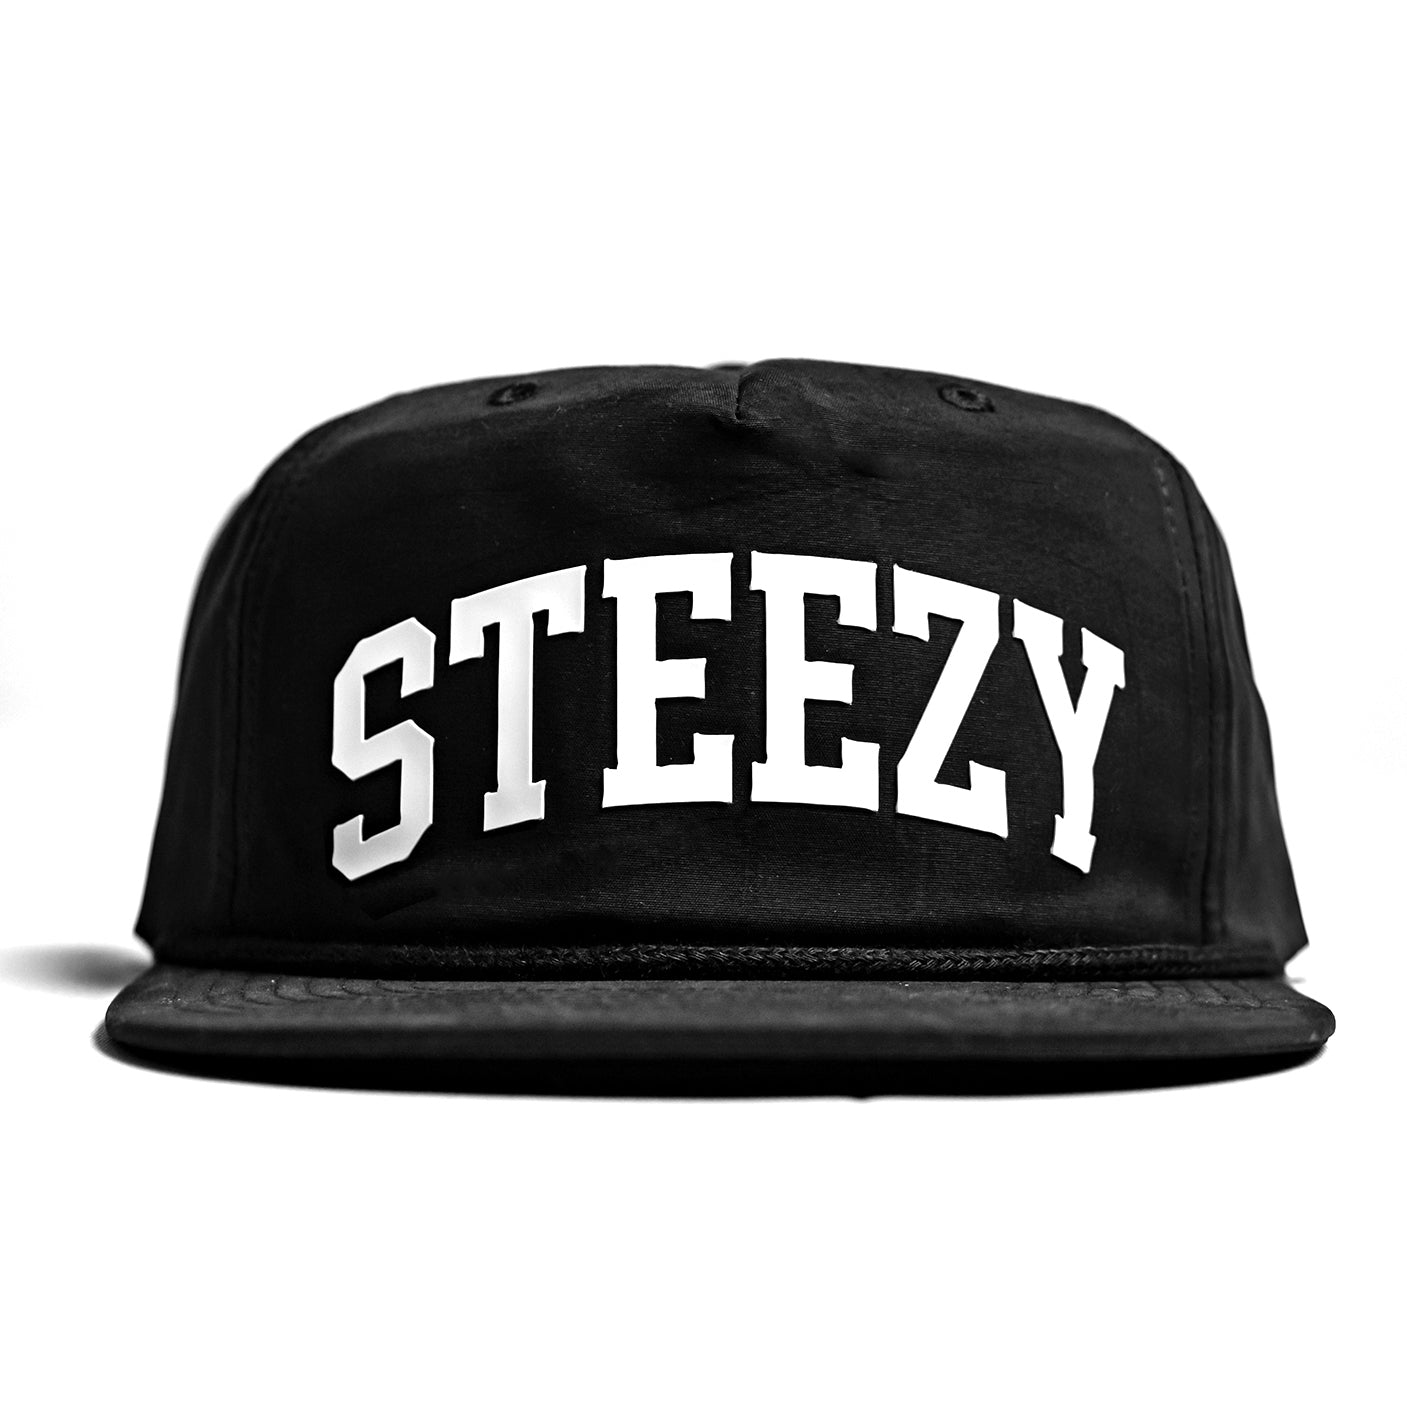 Steezy Cap